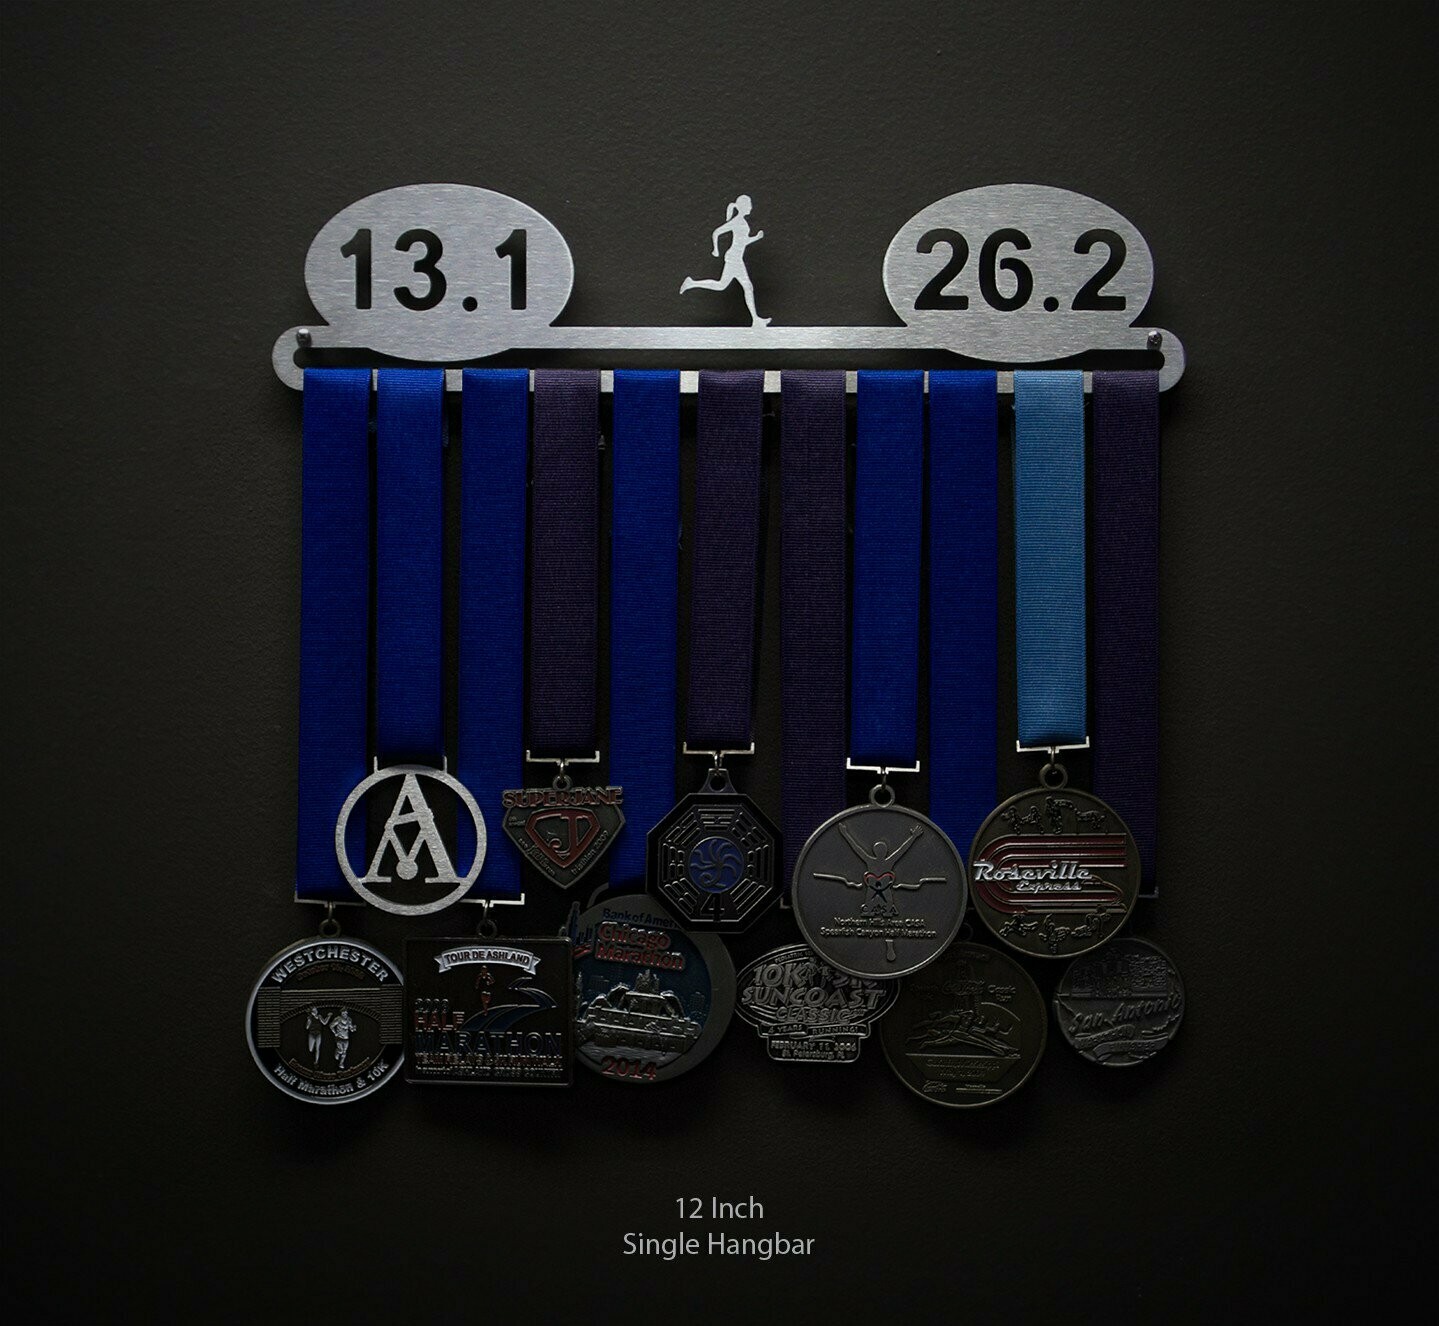 13.126.2 Female Runner Medal Display